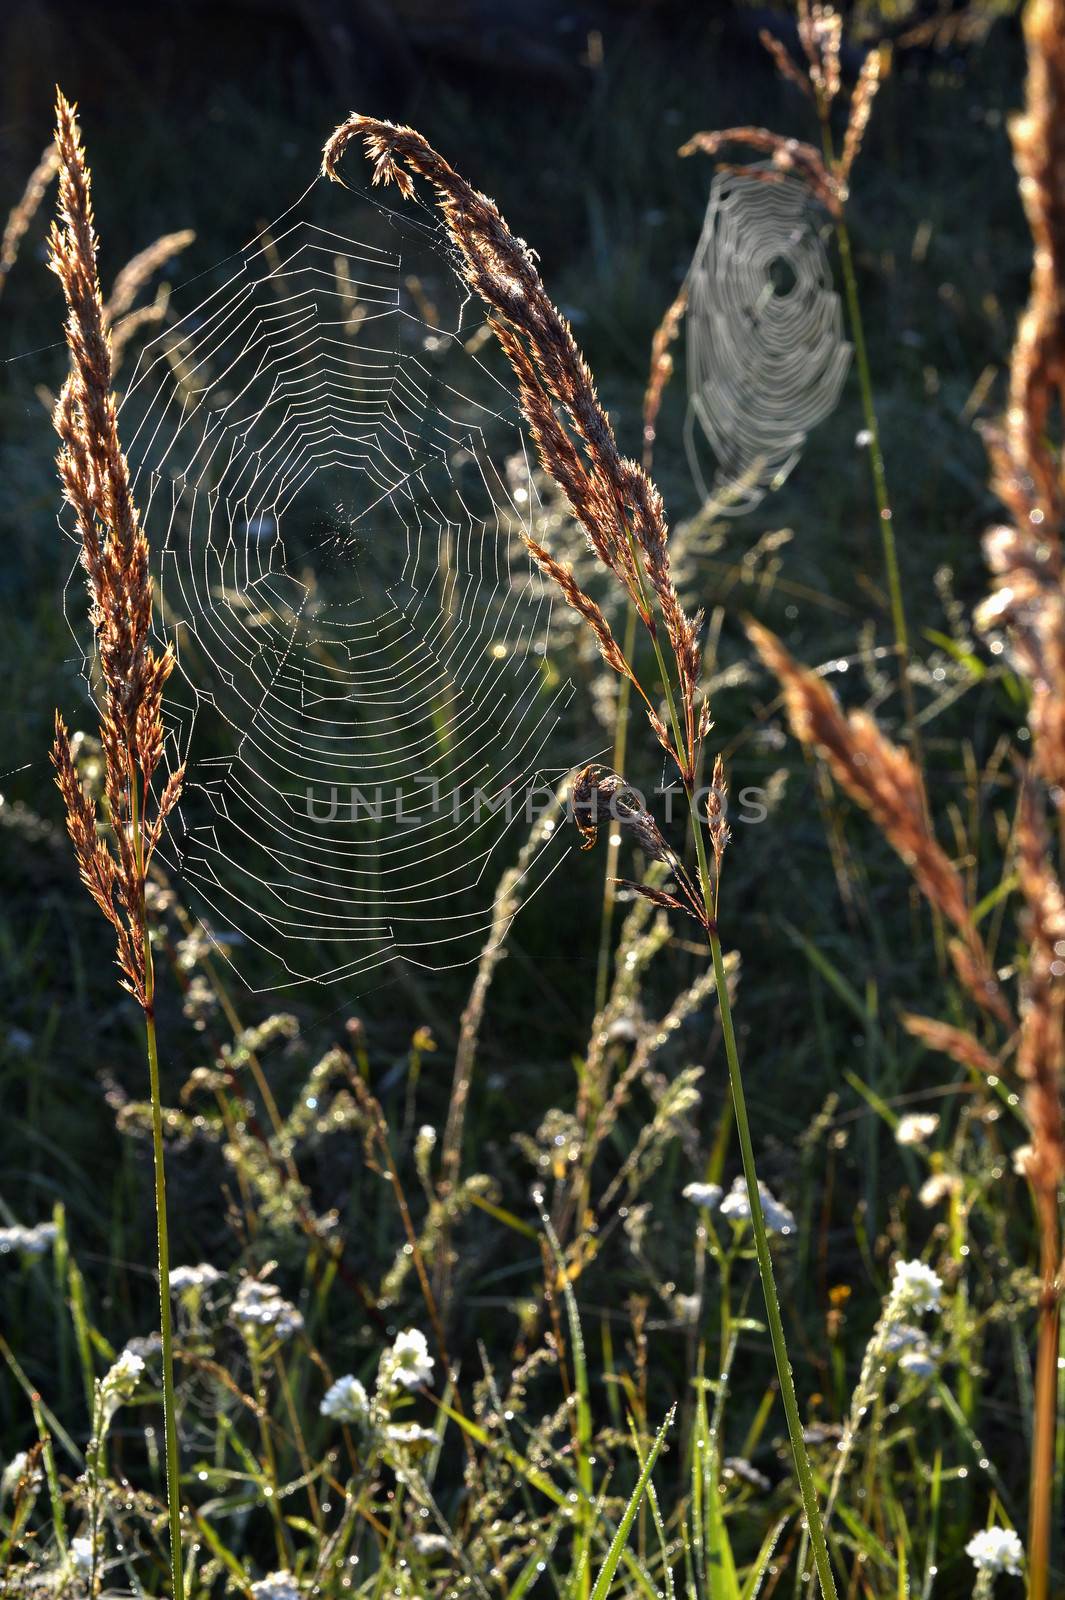 Spiderweb background by SURZ